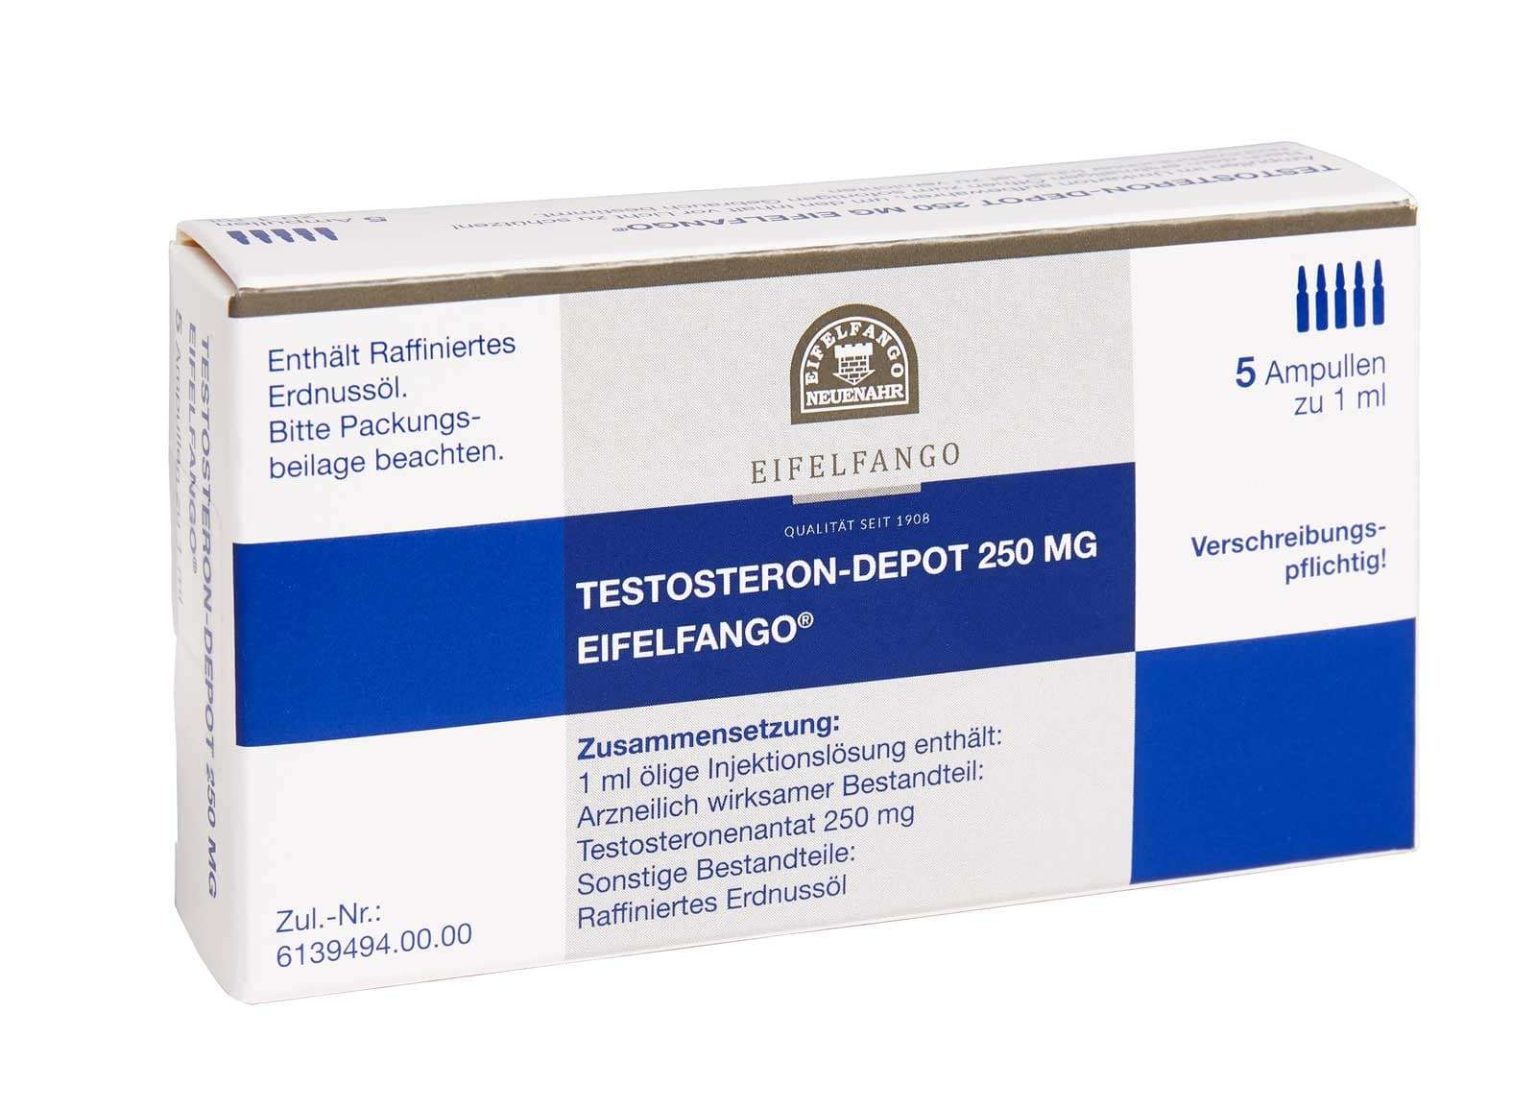 Kosten sparen durch den Erwerb von Testosteron ohne Rezept im Ausland